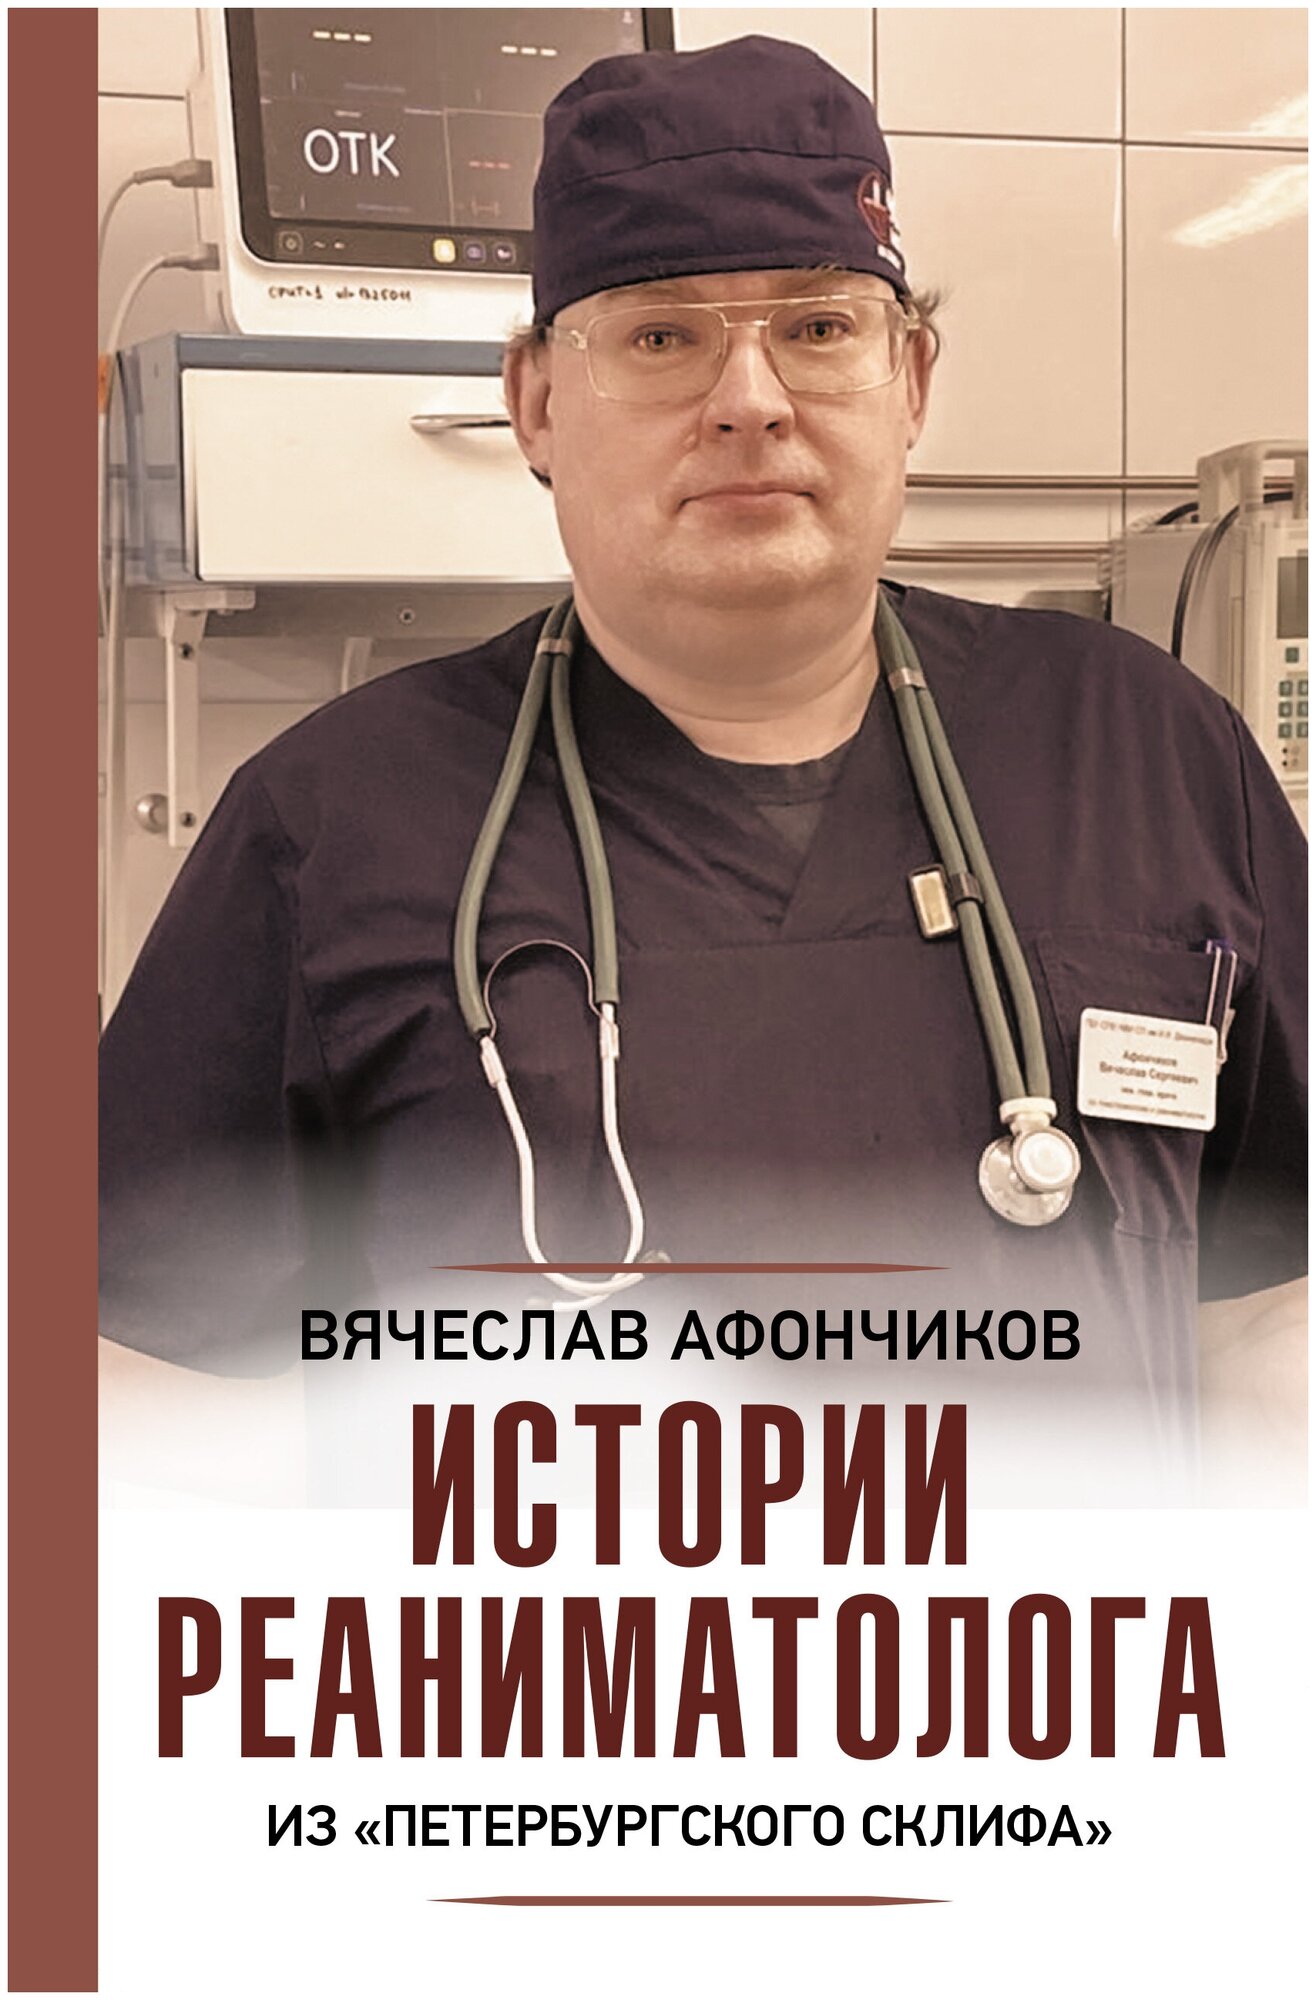 Истории реаниматолога из "петербургского Склифа" Афончиков В. С.